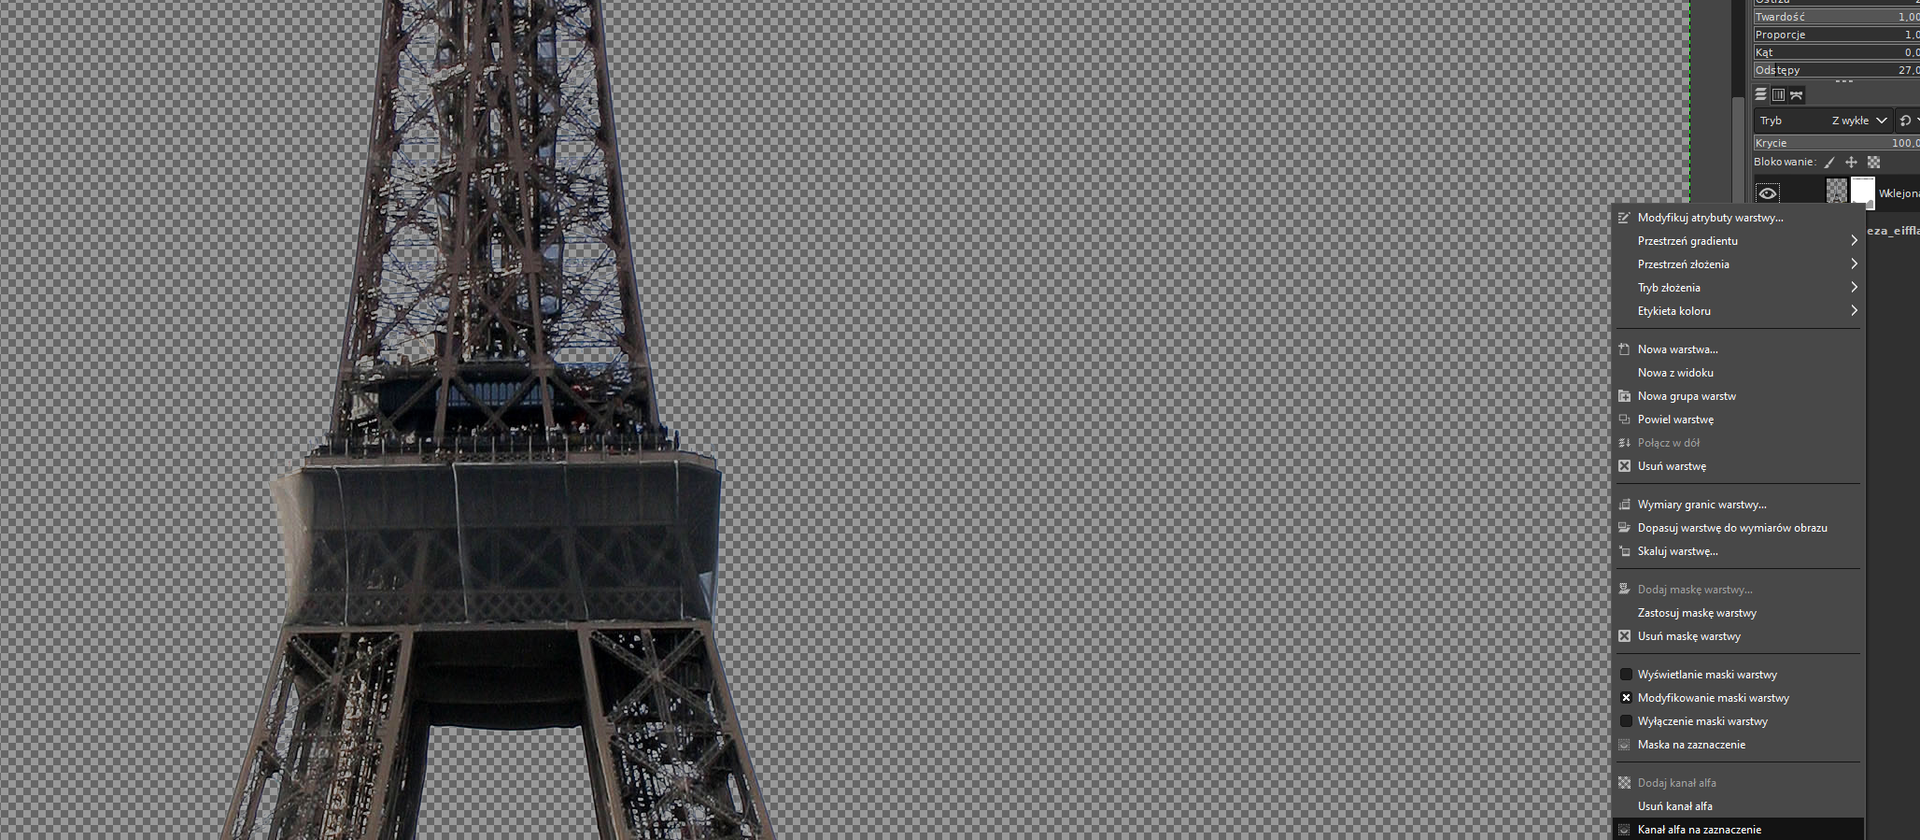 Ilustracja przedstawia okno w programie GIMP. Okno ma kolor szary, na górze i z lewej strony znajduje się podziałka z liczbami. Wewnątrz okna znajduje się fragment wieży Eiffla - górny taras i część iglicy. Tło obrazka – niebo jest pokryte drobną, biało – szarą kratką. Inne elementy ze zdjęcia są wymazane, widać na nim tylko wieżę Eiffla bez podstawy. Po prawej stronie obrazka widoczny jest pasek pod tytułem:  Pencil Generic , a na nim rozwinięta jest lista menu z opcjami wyboru: Modyfikuj atrybuty warstwy, Przestrzeń gradientu, Przestrzeń złożenia, Tryb złożenia, Etykieta koloru, Nowa warstwa…, Nowa z widoku, Nowa grupa warstw, Powiel warstwę, Połącz w dół, Zaznaczona krzyżykiem opcja: Usuń warstwę, Wymiary granic warstwy…, Dopasuj warstwę do wymiarów obrazu, Skaluj warstwę…, Dodaj maskę warstwy…, Zastosuj maskę warstwy, Zaznaczona krzyżykiem opcja: Usuń maskę warstwy, Wyświetlanie maski warstwy, Zaznaczona krzyżykiem opcja: Modyfikowanie maski warstwy, Wyłączenie maski warstwy, Maska na zaznaczenie, Dodaj kanał alfa, Usuń kanał alfa oraz wybrana pozycja listy: Kanał alfa na zaznaczenie. 